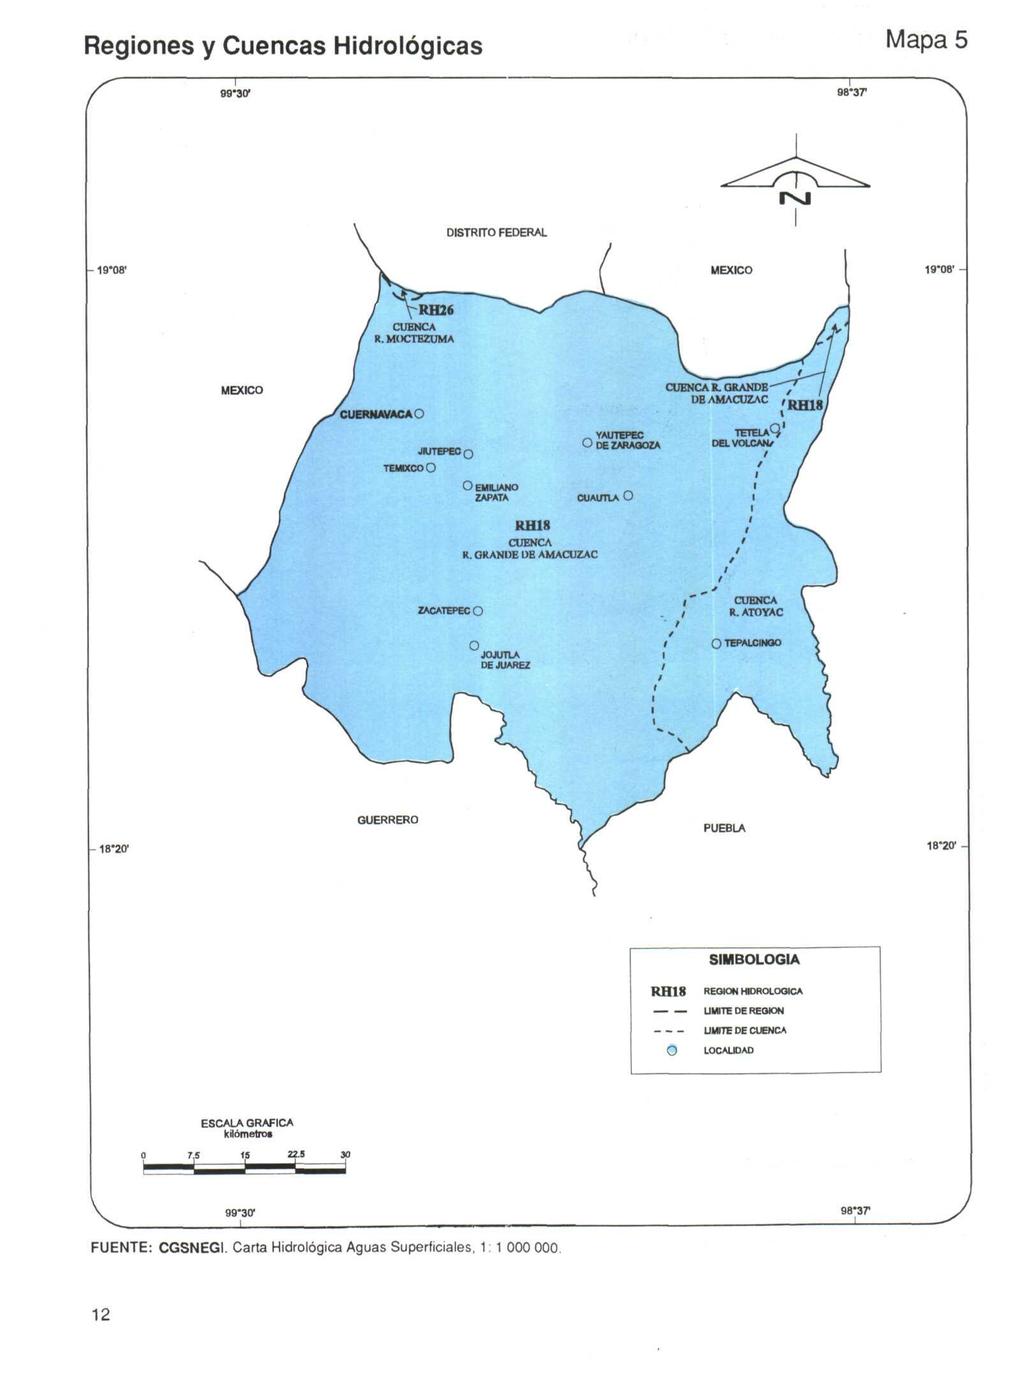 Regiones y Cuencas Hidrologicas Mapa 5-30 1 *37-08' -08' - MEXICO GUERRERO -20' -20 1 - SIMBOLOGIA RH O REGION HIDROLOOICA UMITE DE